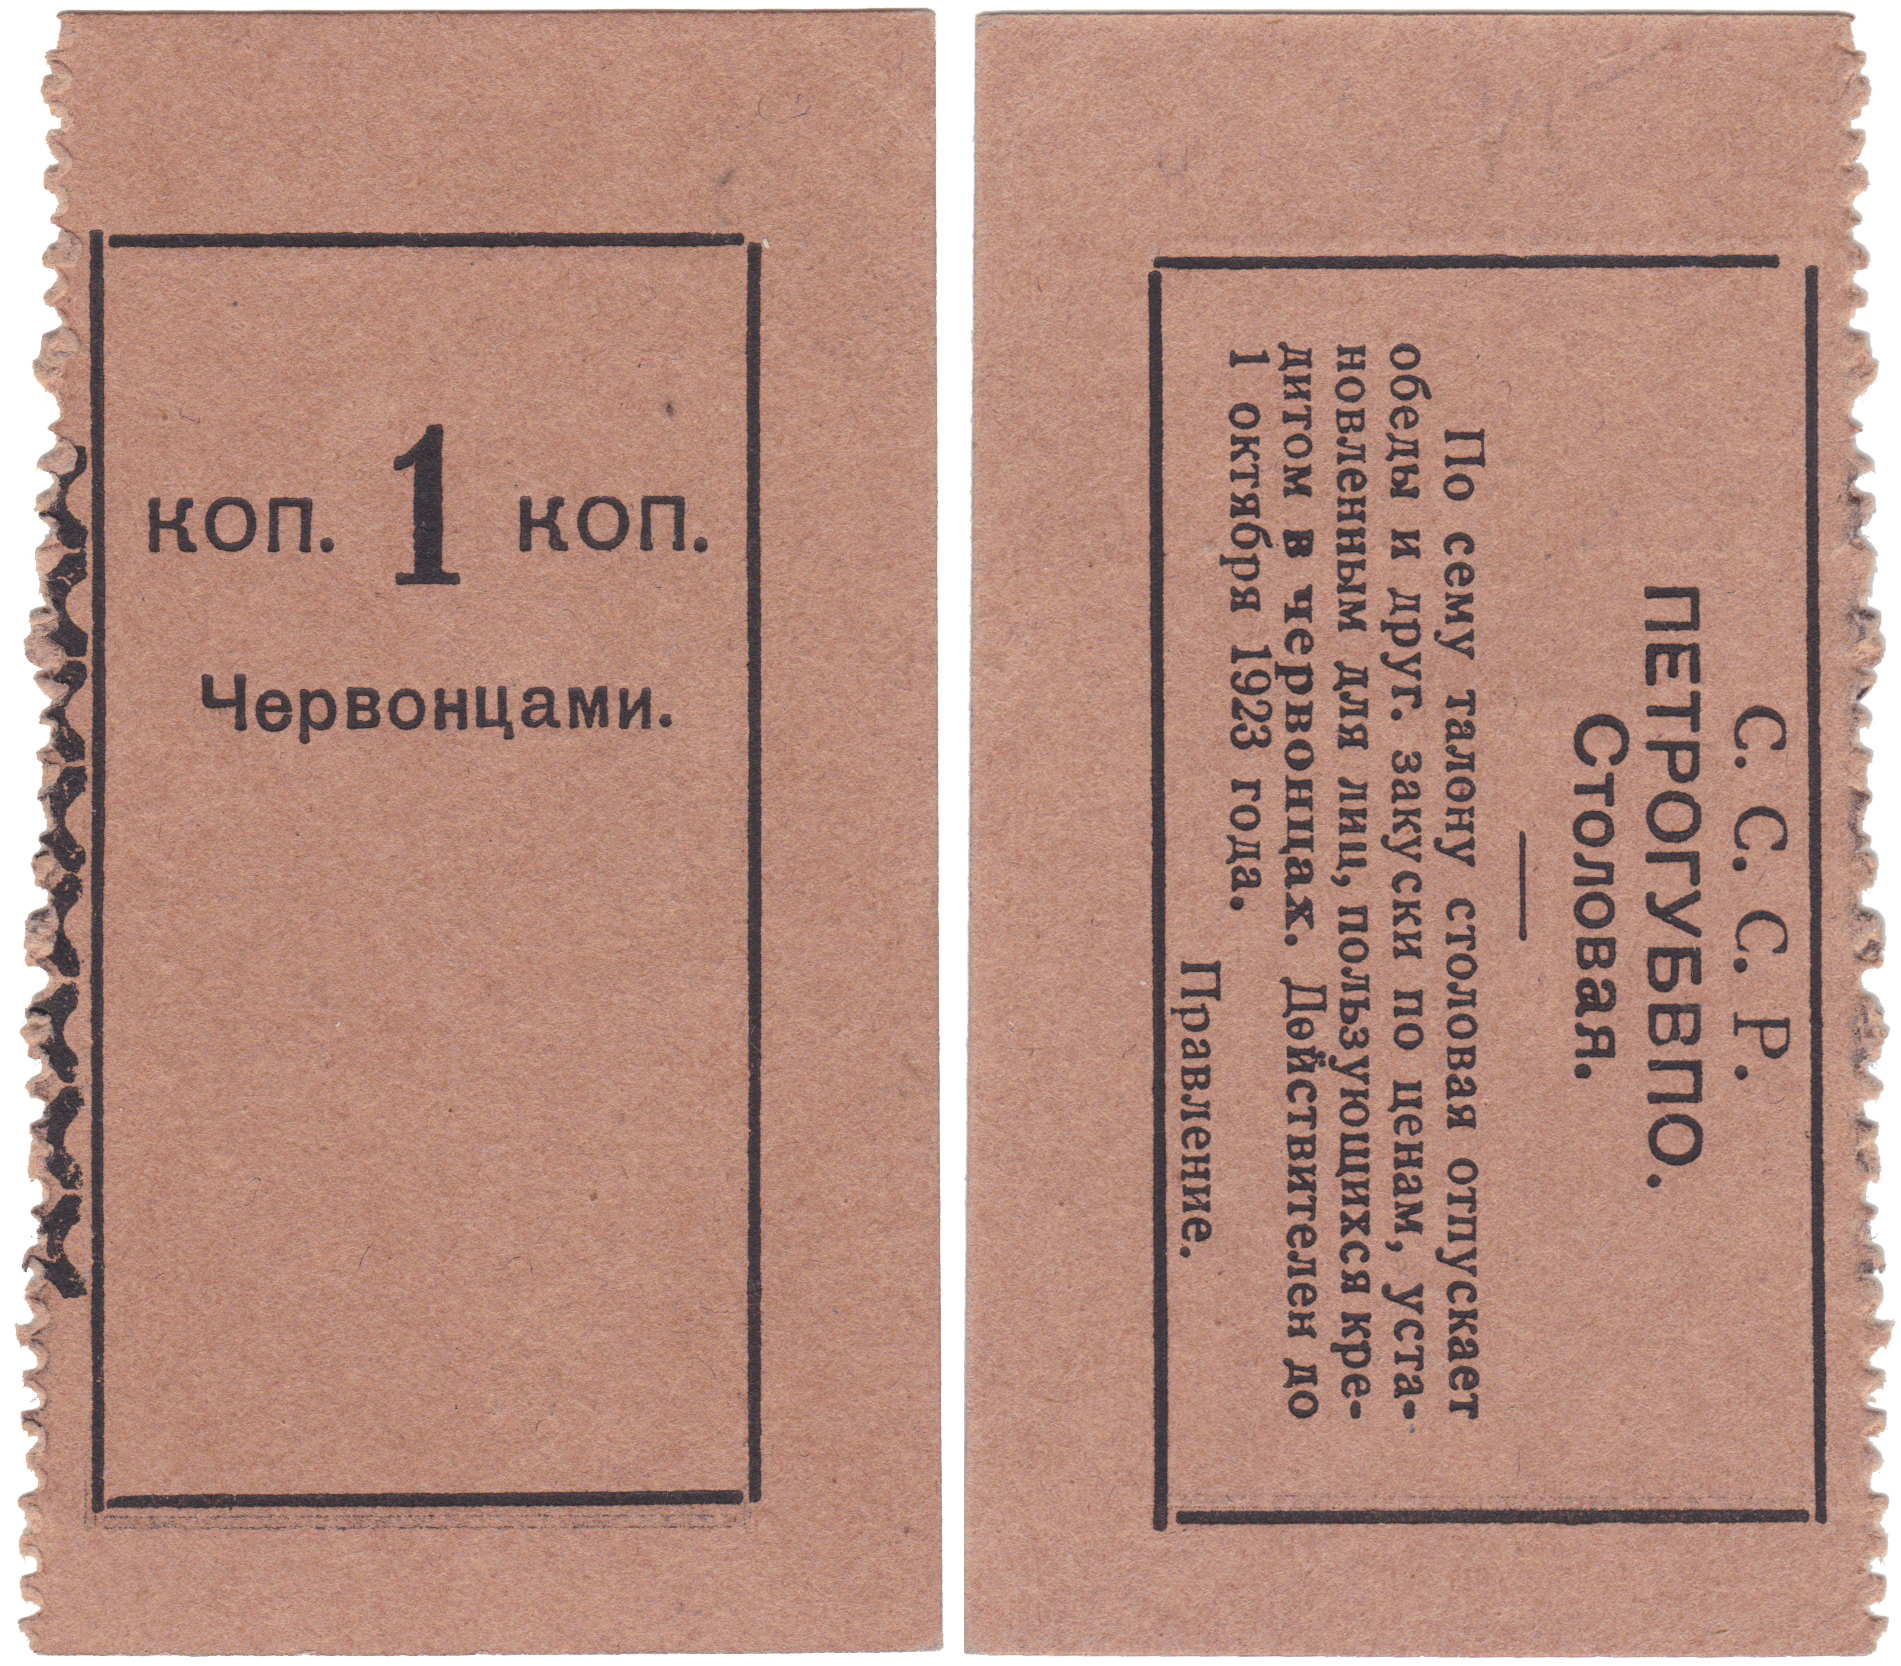 1 Копейка червонцами 1923 год. Столовая Петроградского Губернского военно-потребительского общества